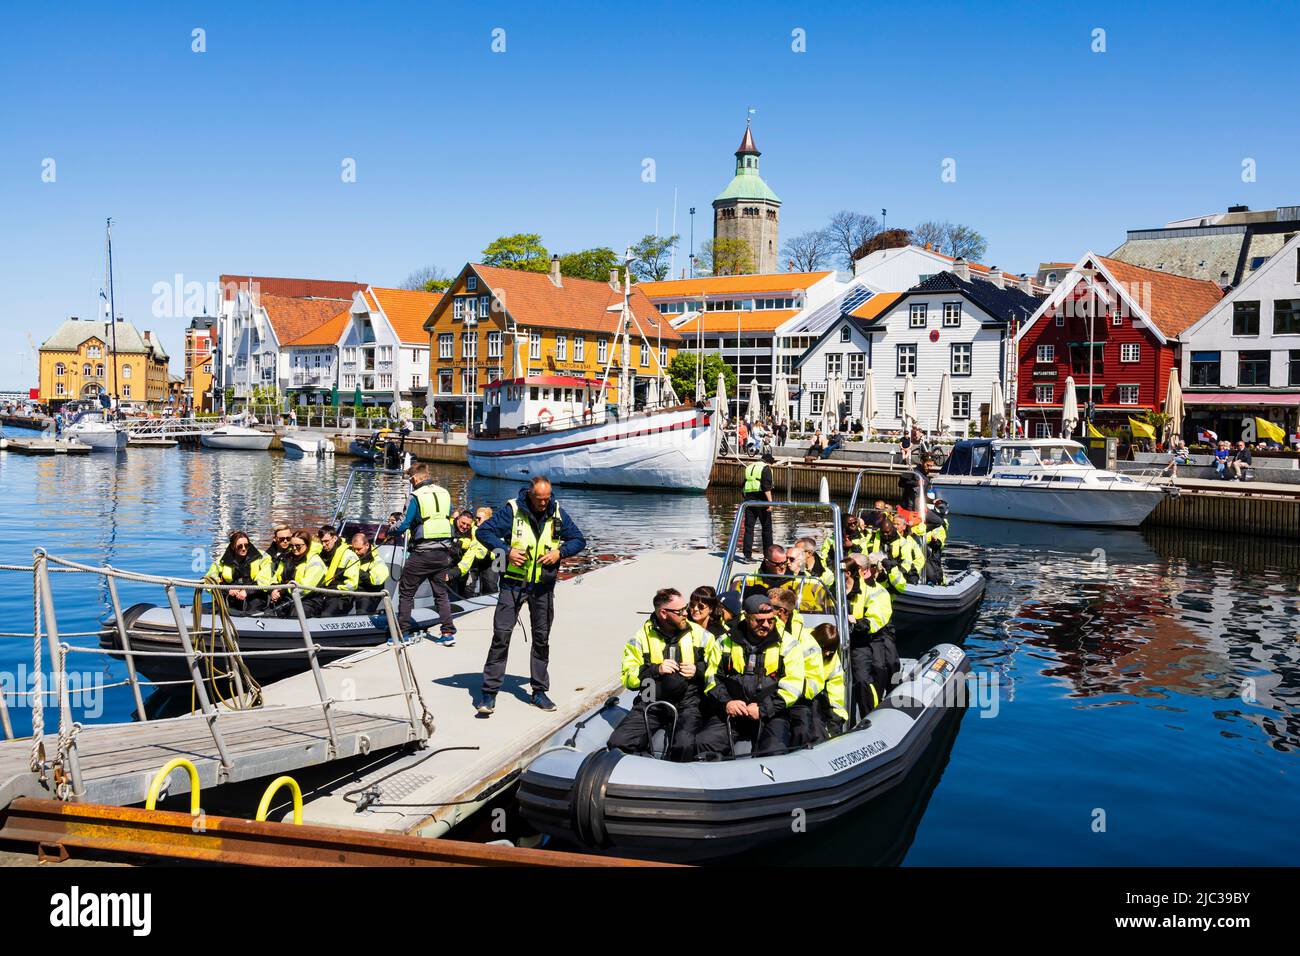 Les passagers touristiques embarquent des bateaux gonflables ridgid pour un voyage rapide sur les fjords. Tous sont en vestes Hi-viz.Stavanger, Norvège Banque D'Images